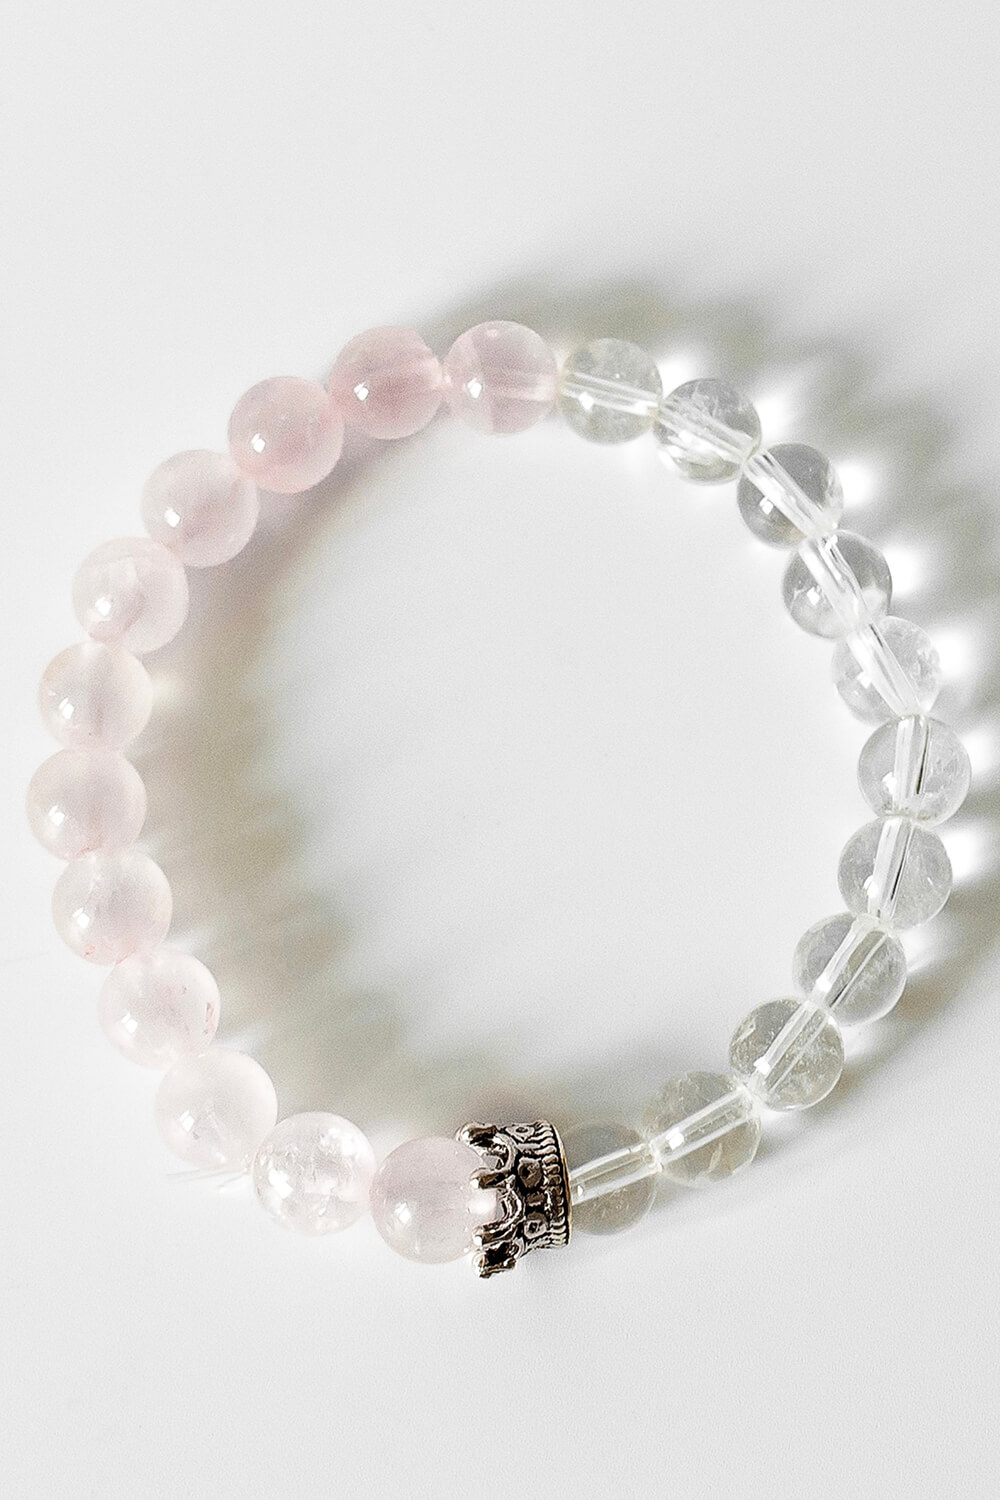 PINK Rose and Crystal Quartz Bracelet, Image 2 of 2